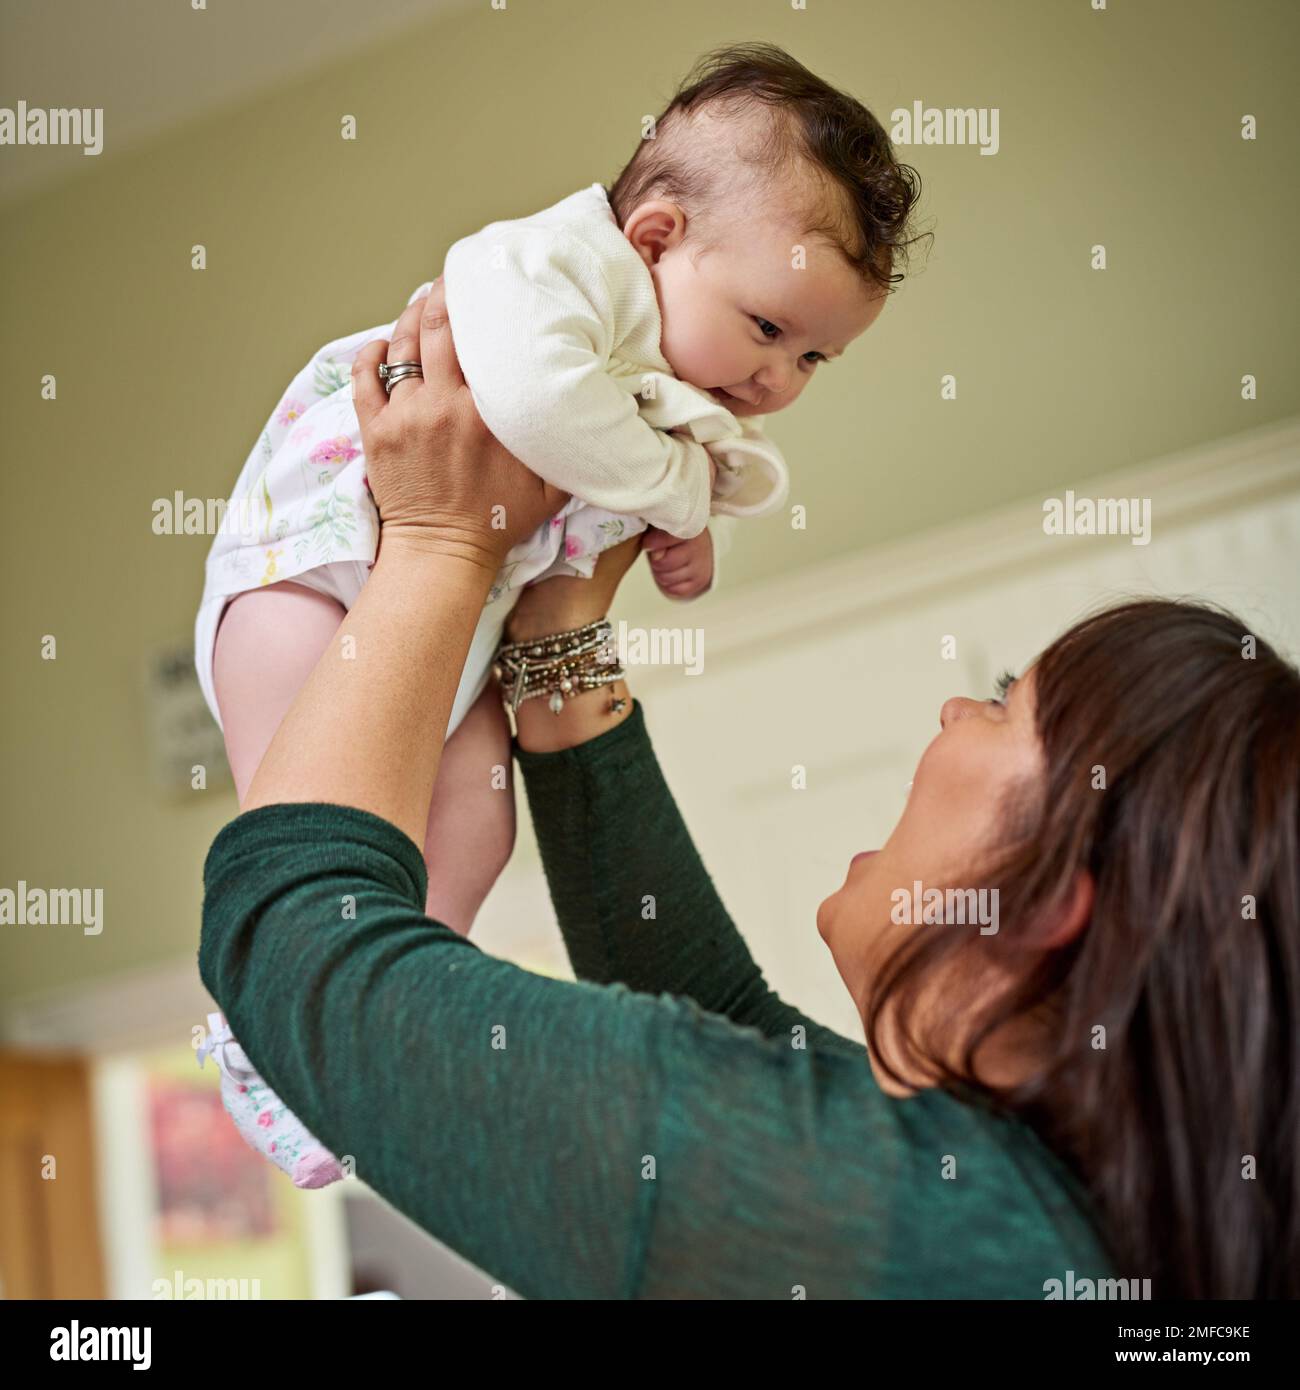 Moms größtes Bündel an Freude. Eine Mutter, die sich mit ihrer süßen kleinen Tochter zu Hause anfreundet. Stockfoto